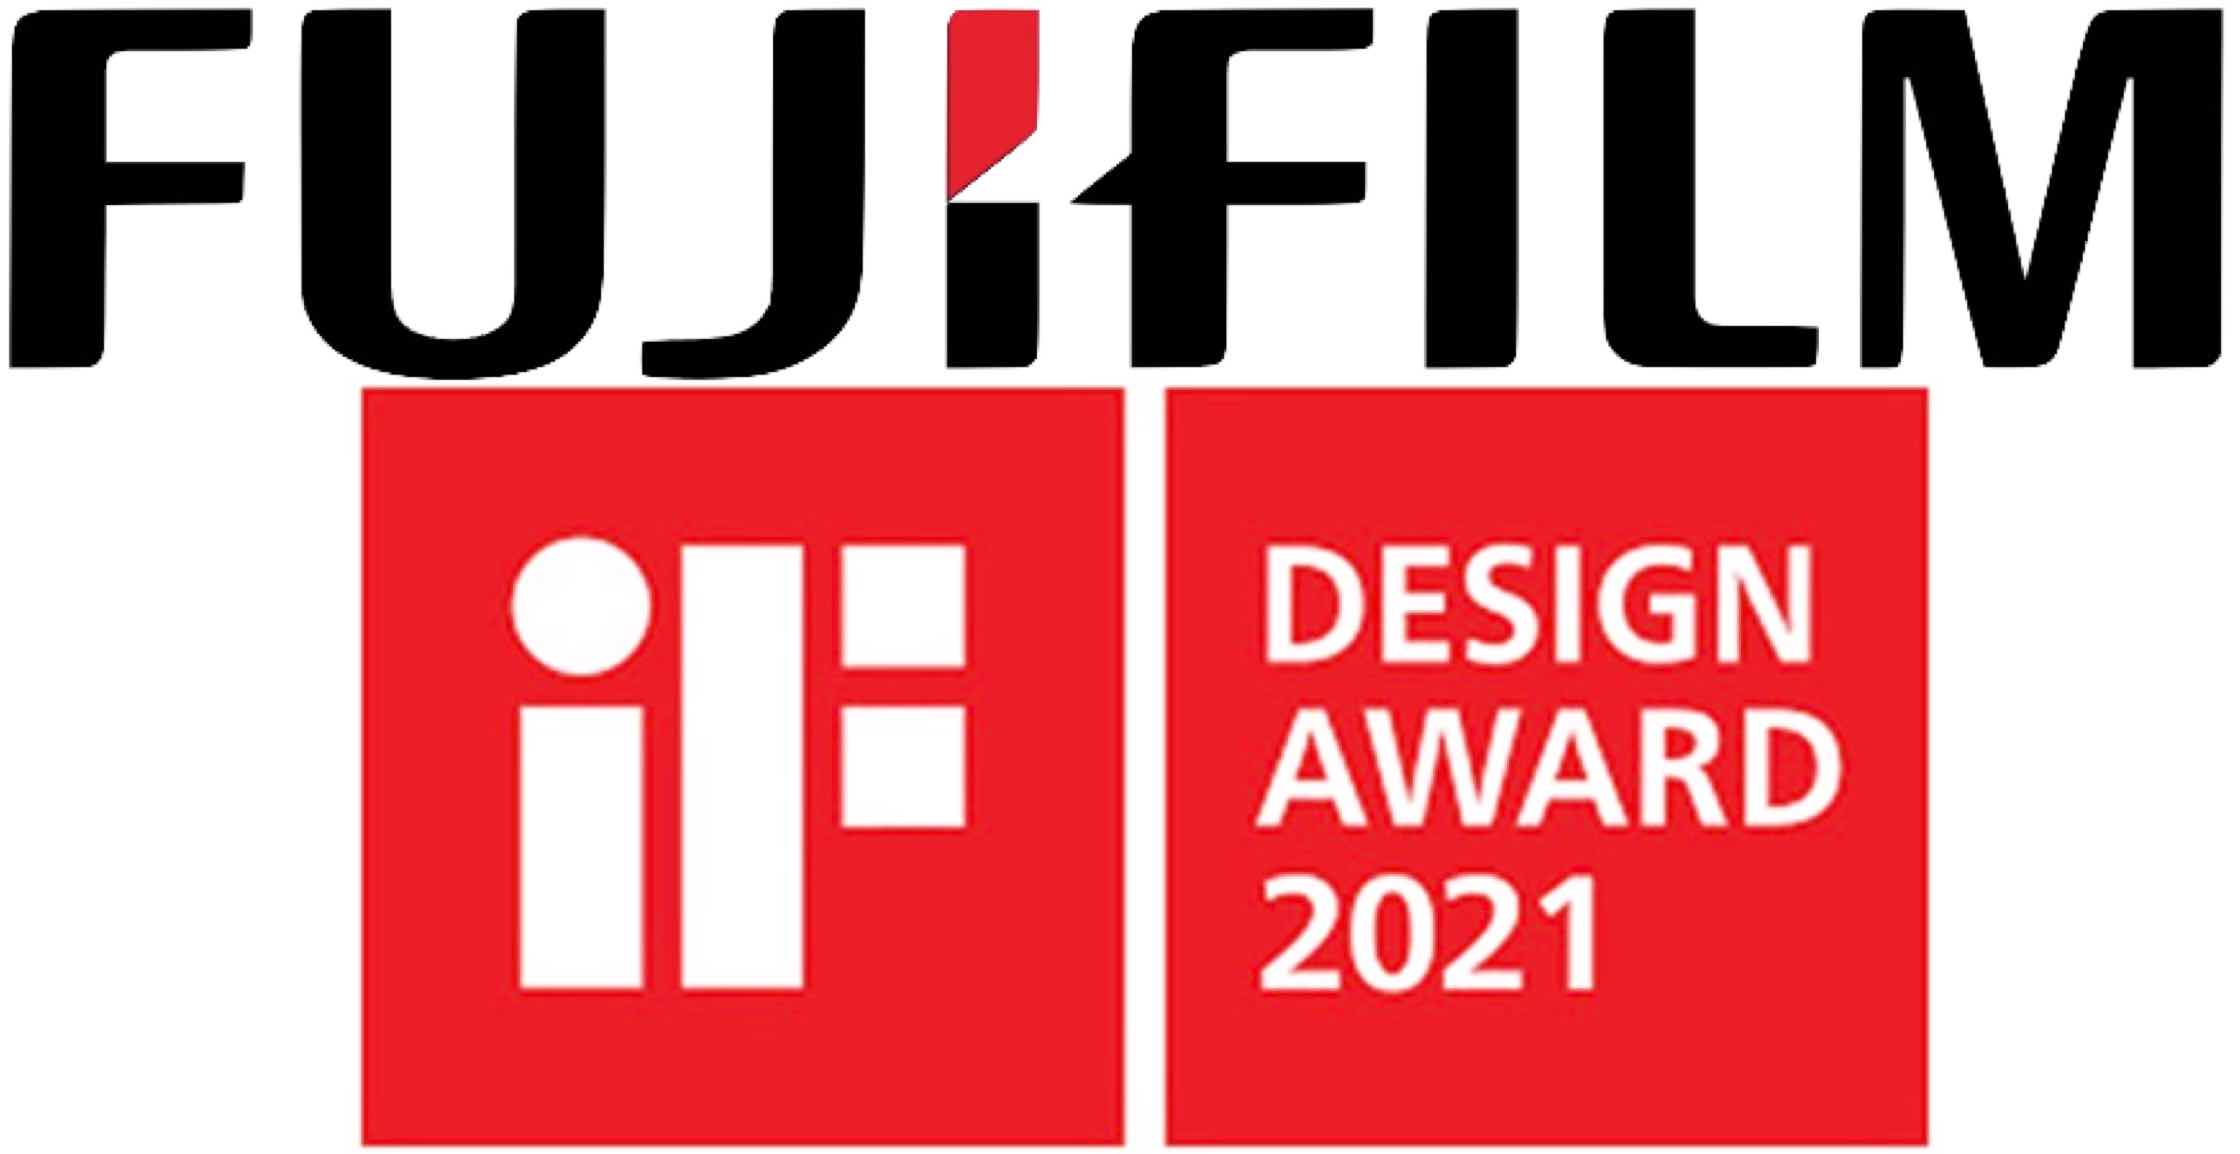 Fujifilm chiến thắng giải thưởng "iF Design Award" với kỉ lục 23 sản phẩm